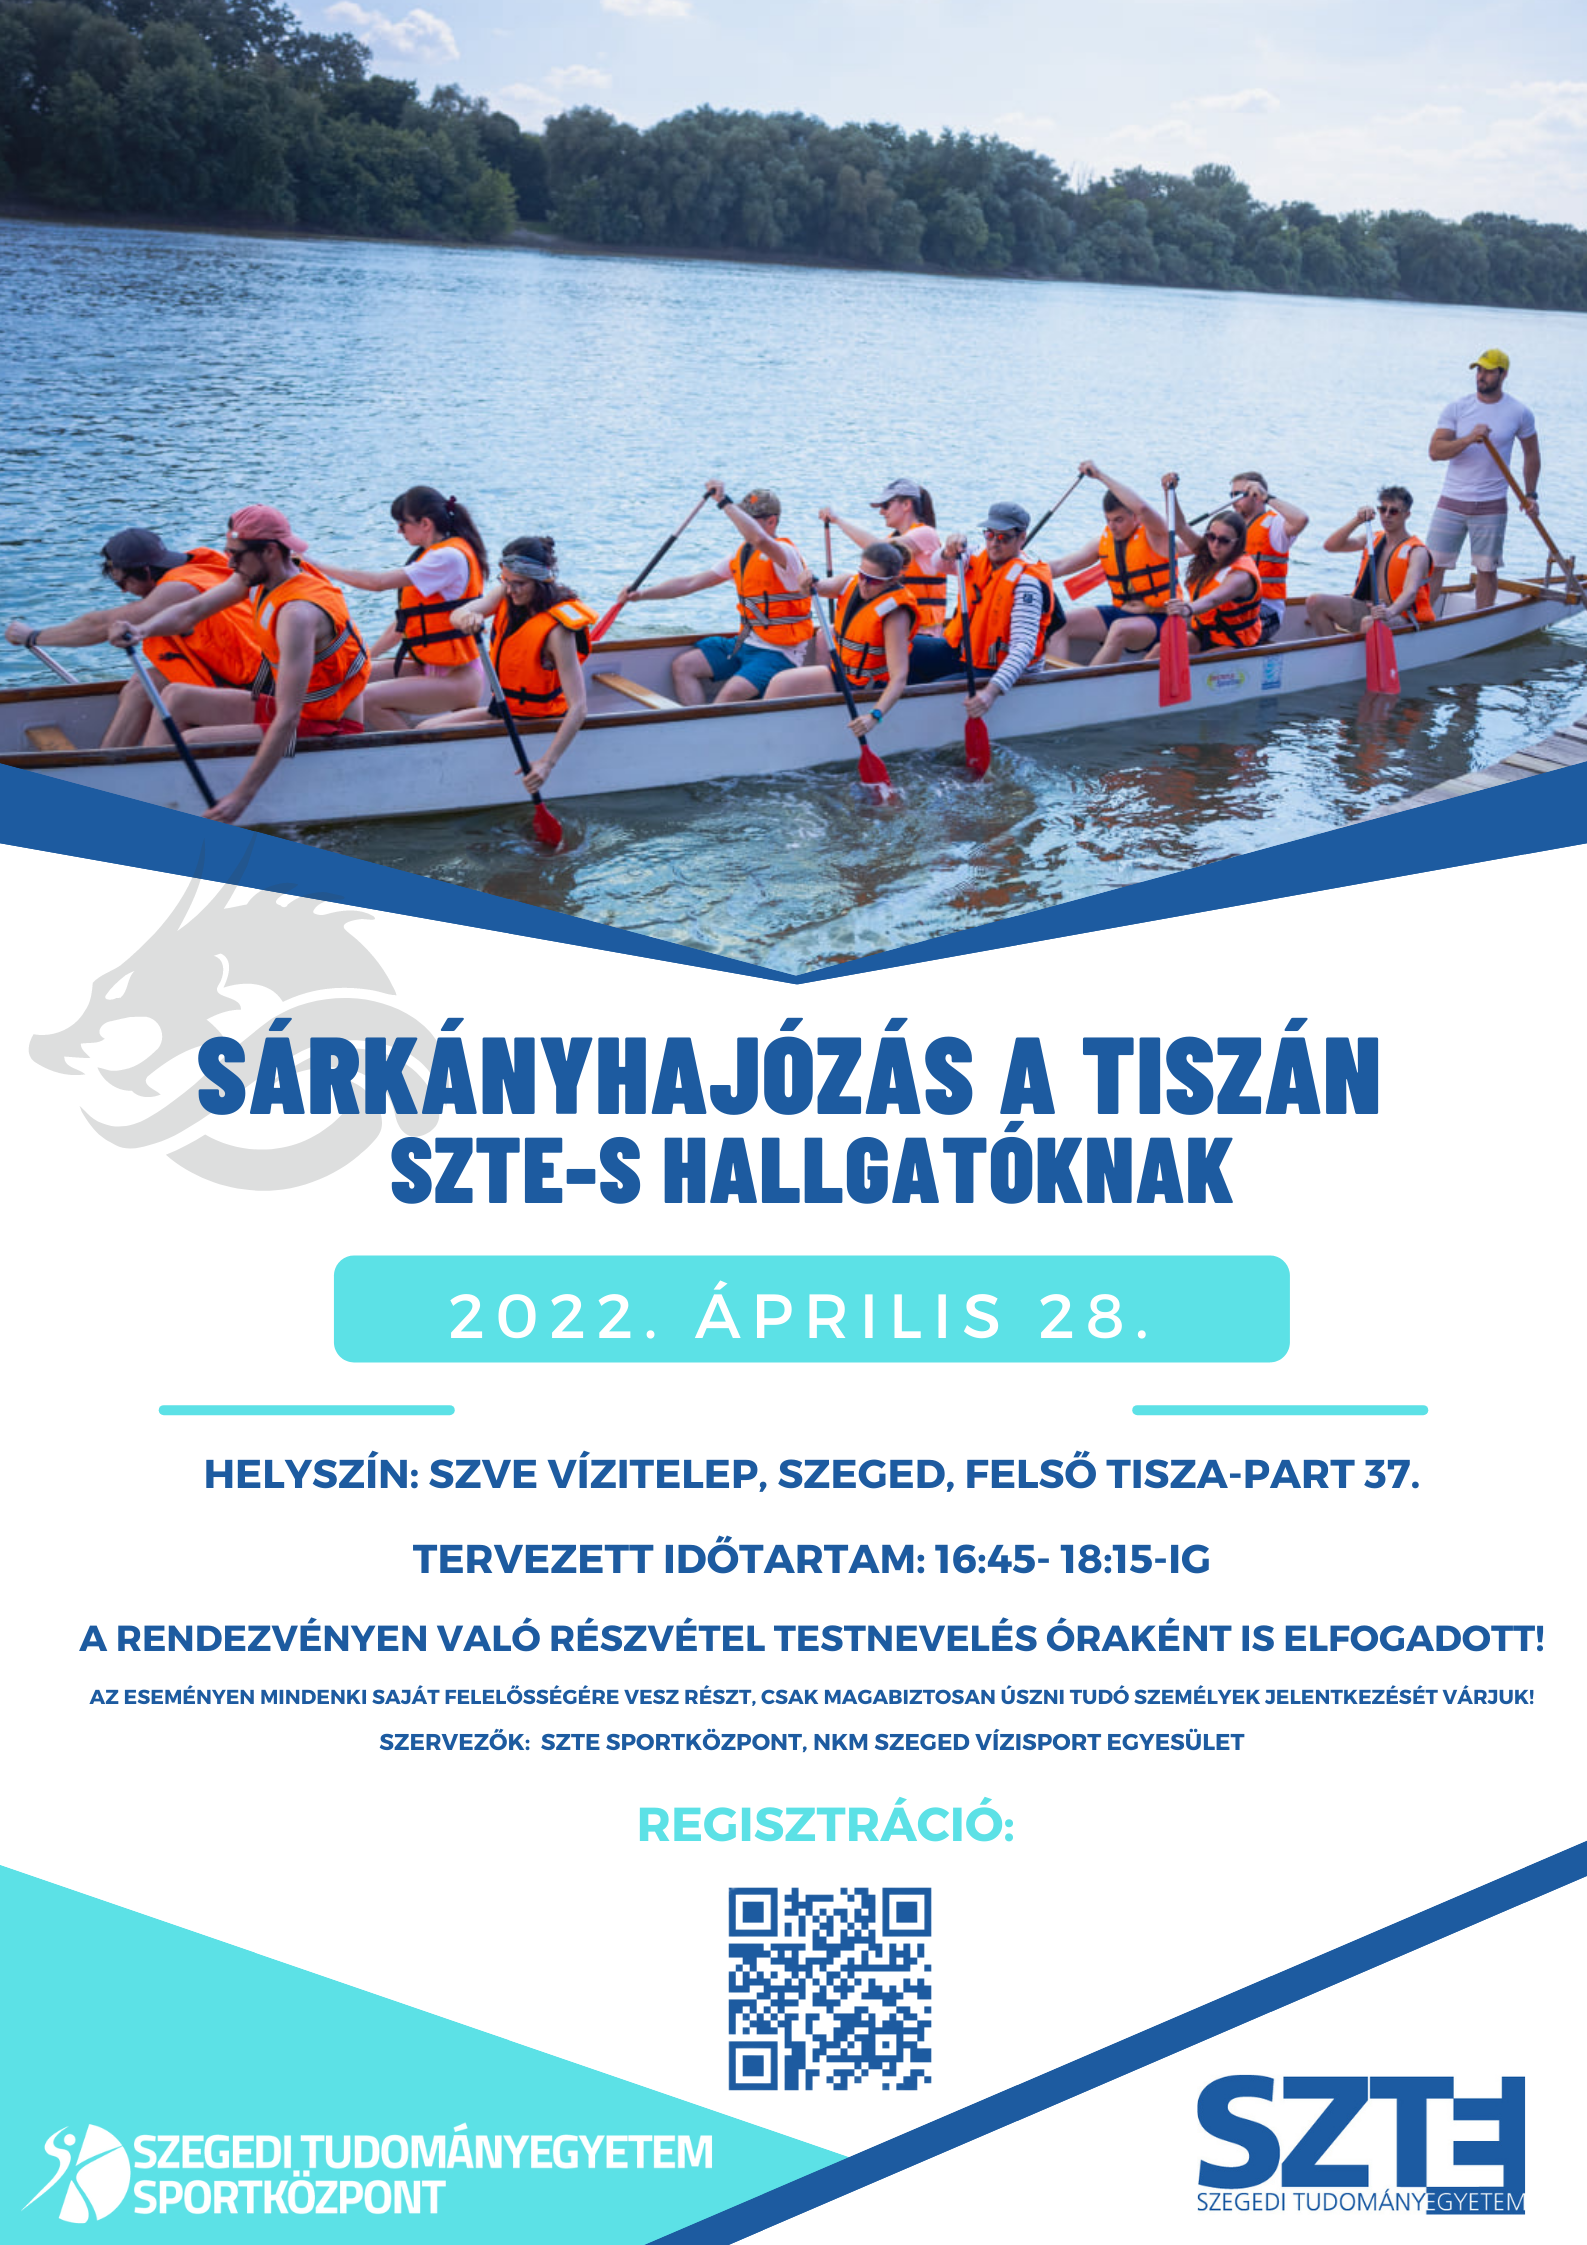 Sarkanyhajozas_2022.04.28.